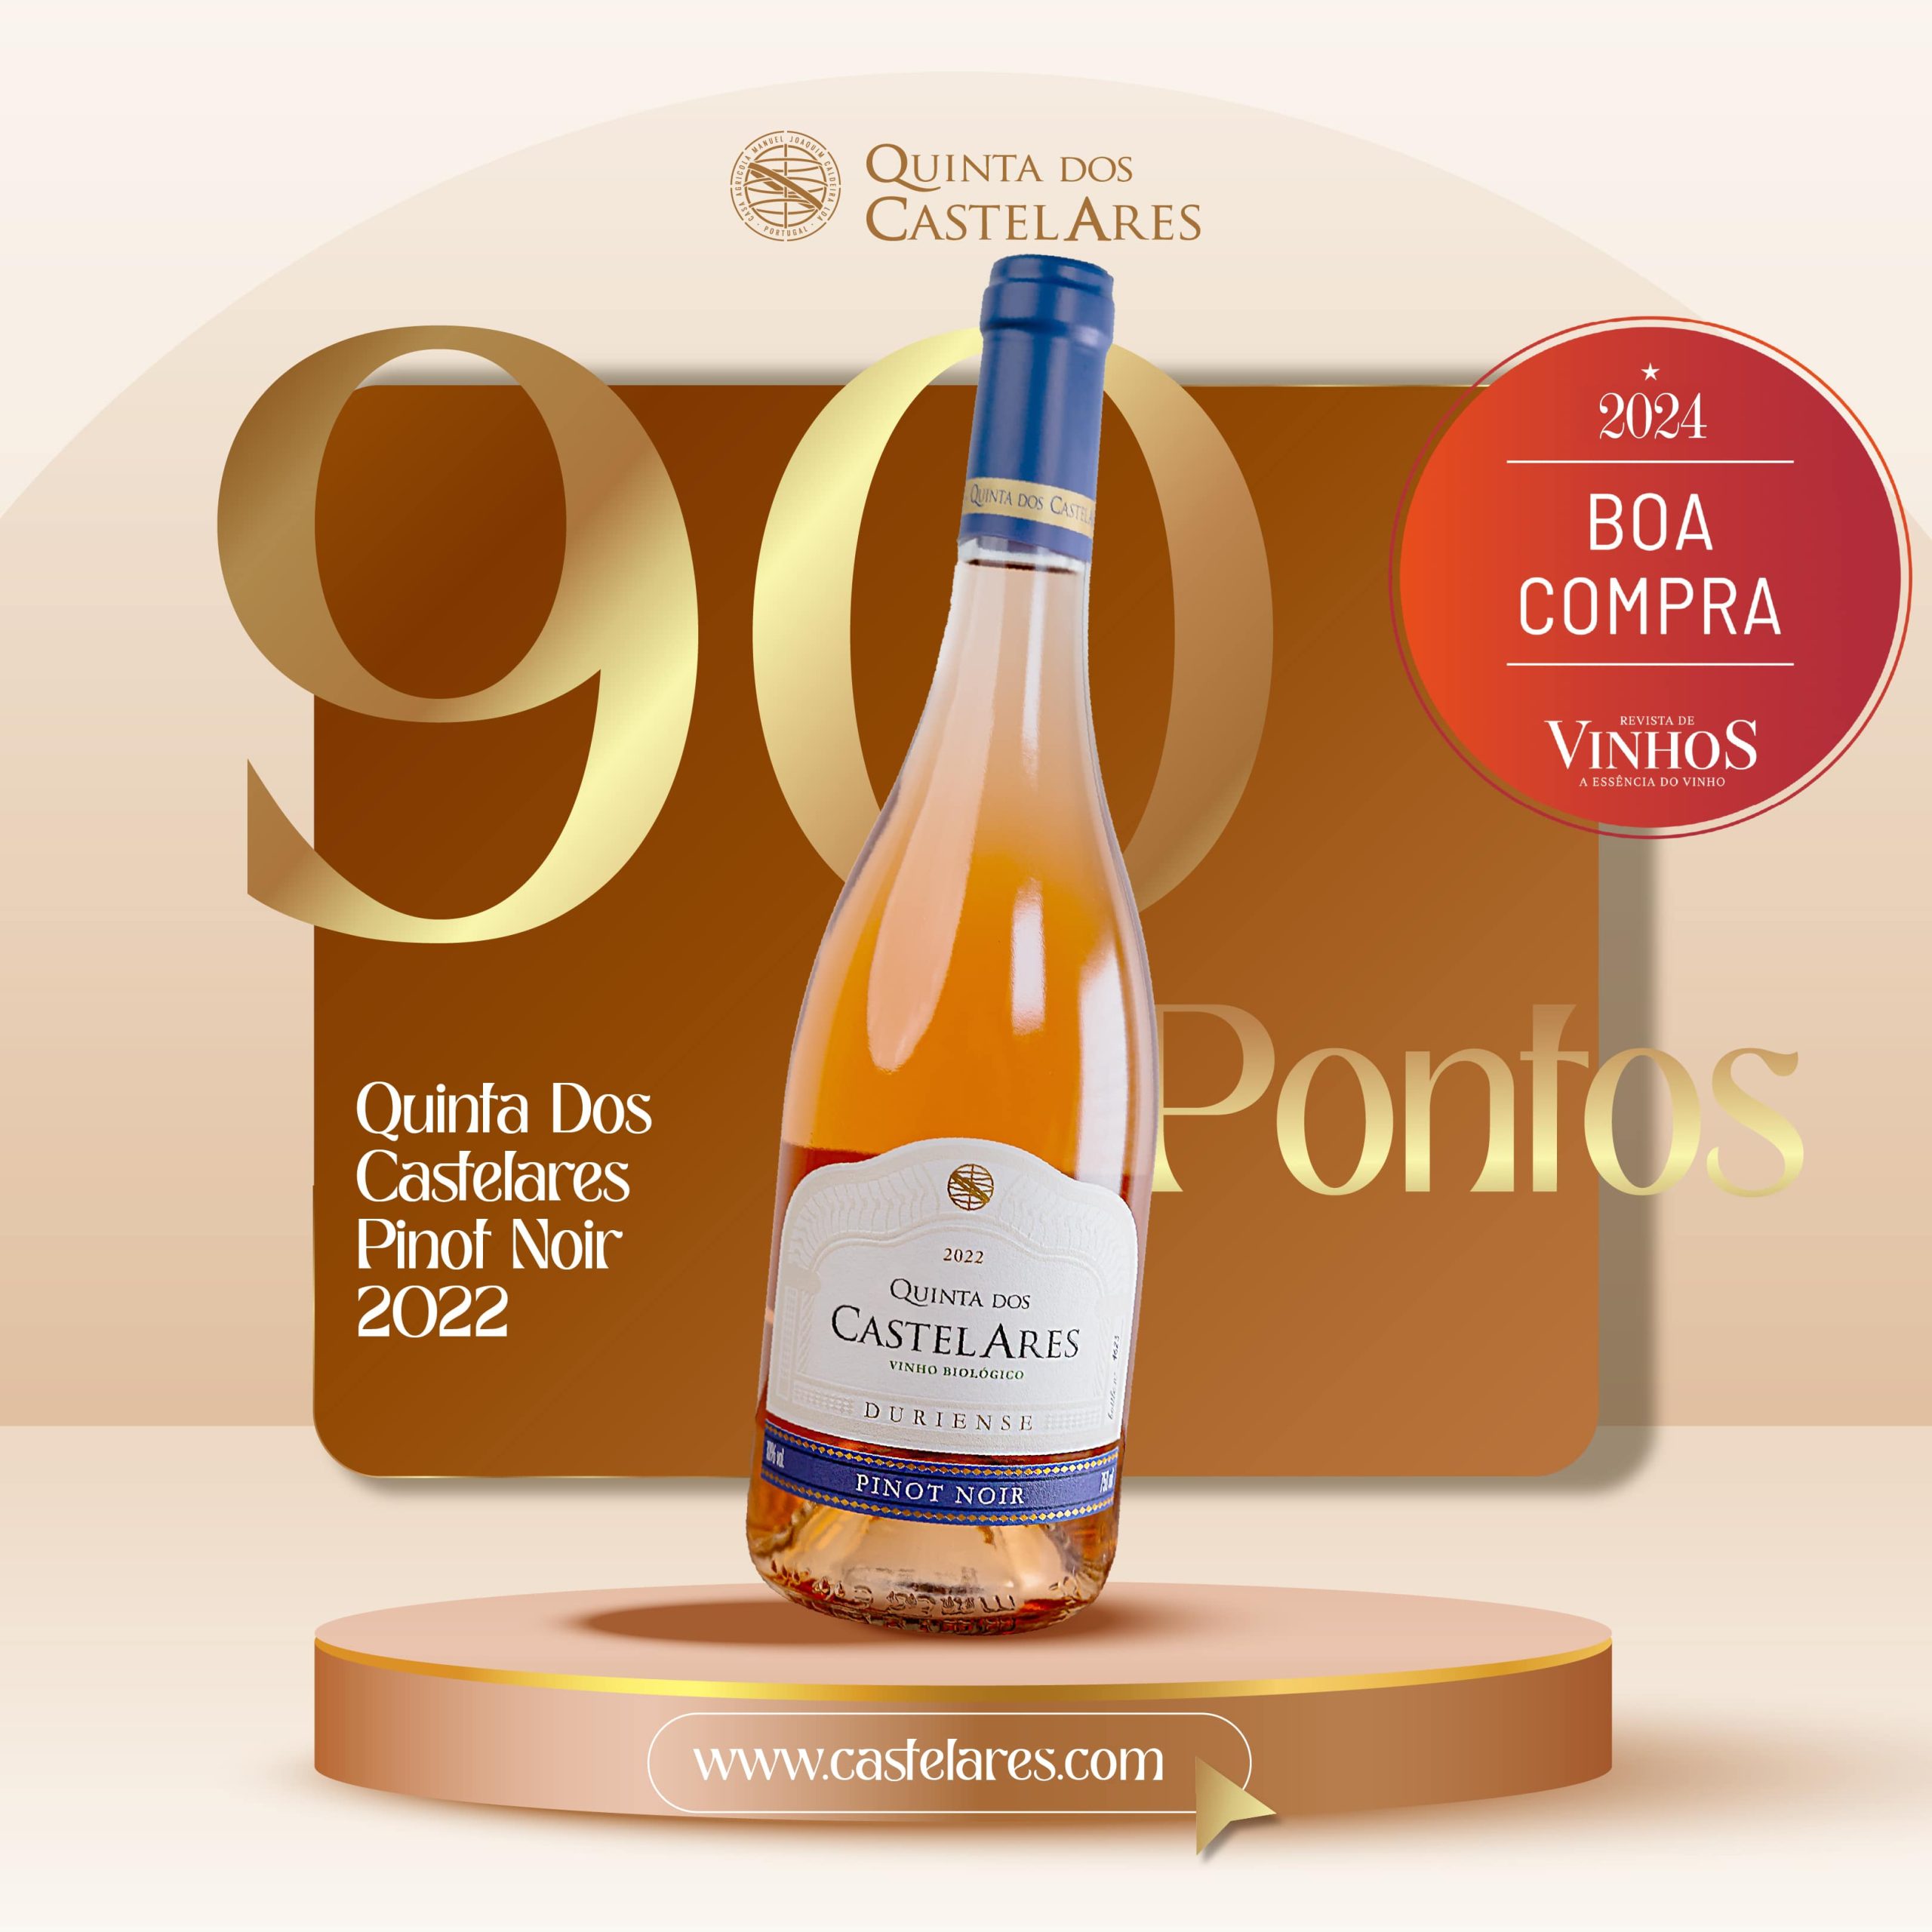 Quinta dos Castelares Pinot Noir Biológico 2022 distinguido com 90 pontos na edição de Maio da Revista de Vinhos da Essência do Vinho.